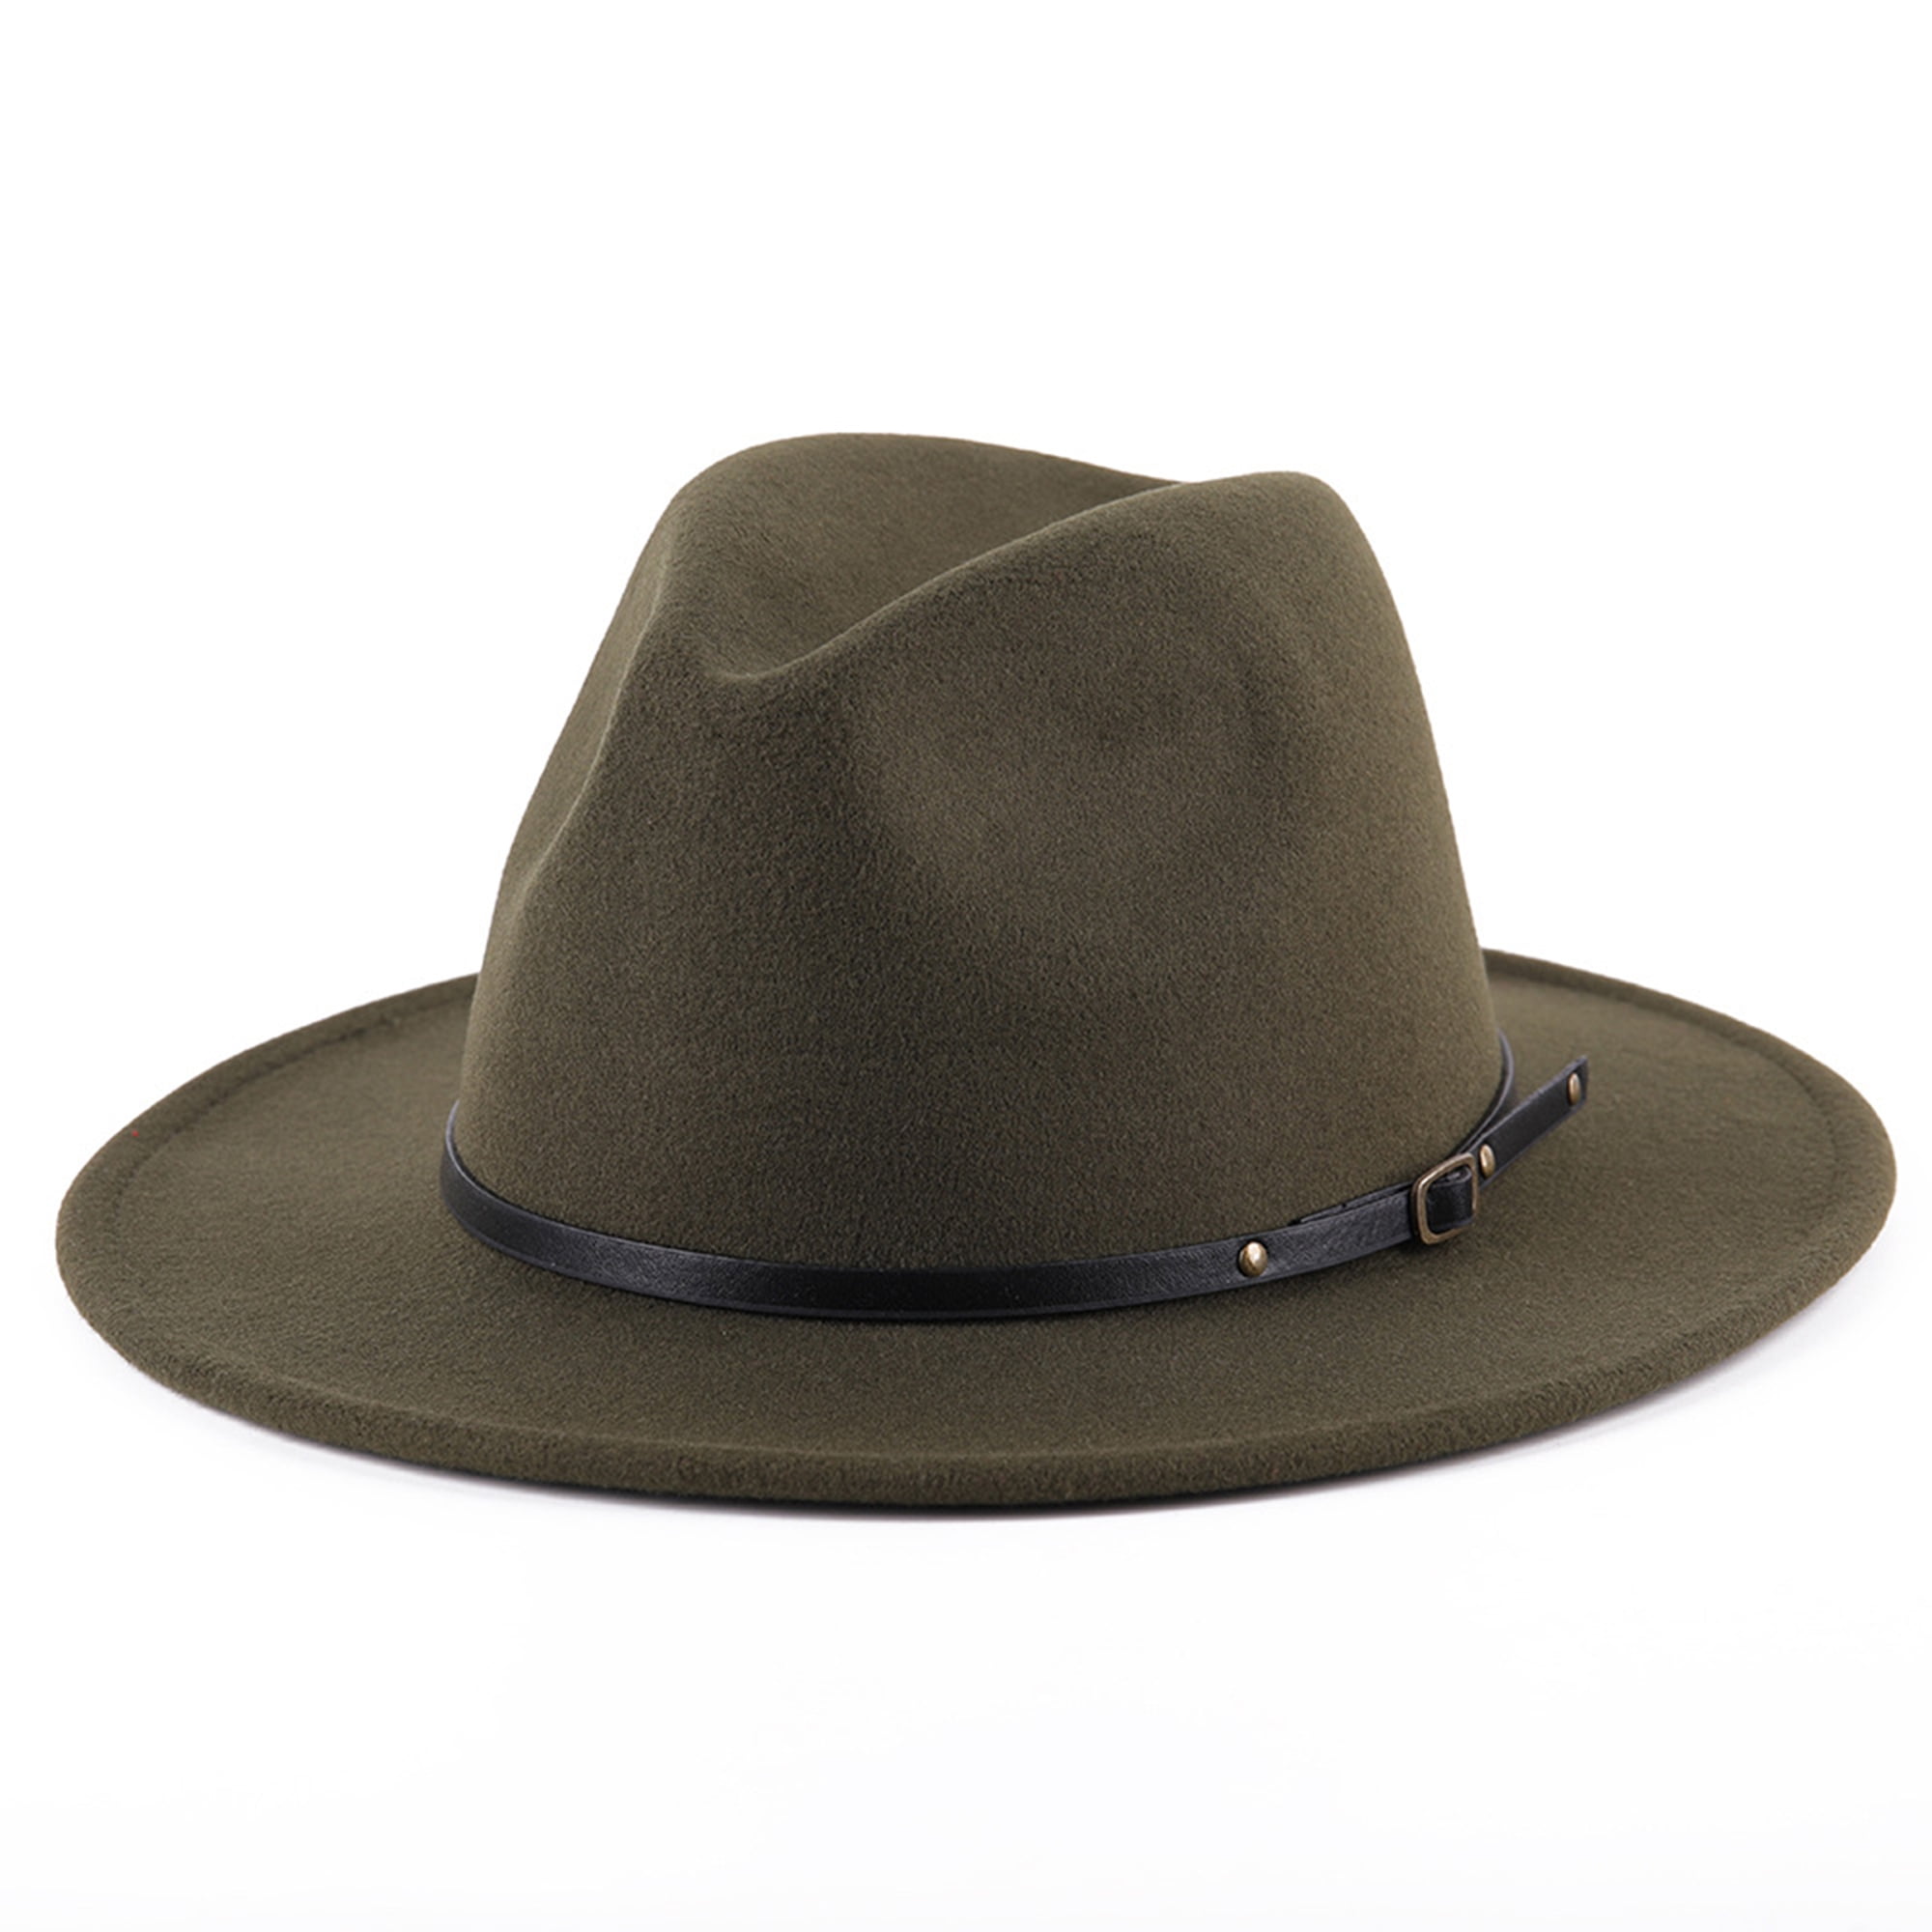 Men Retro Fedora Hat Felt Winter Stylish Jazz Cap Outdoor Gentleman Top Hats 